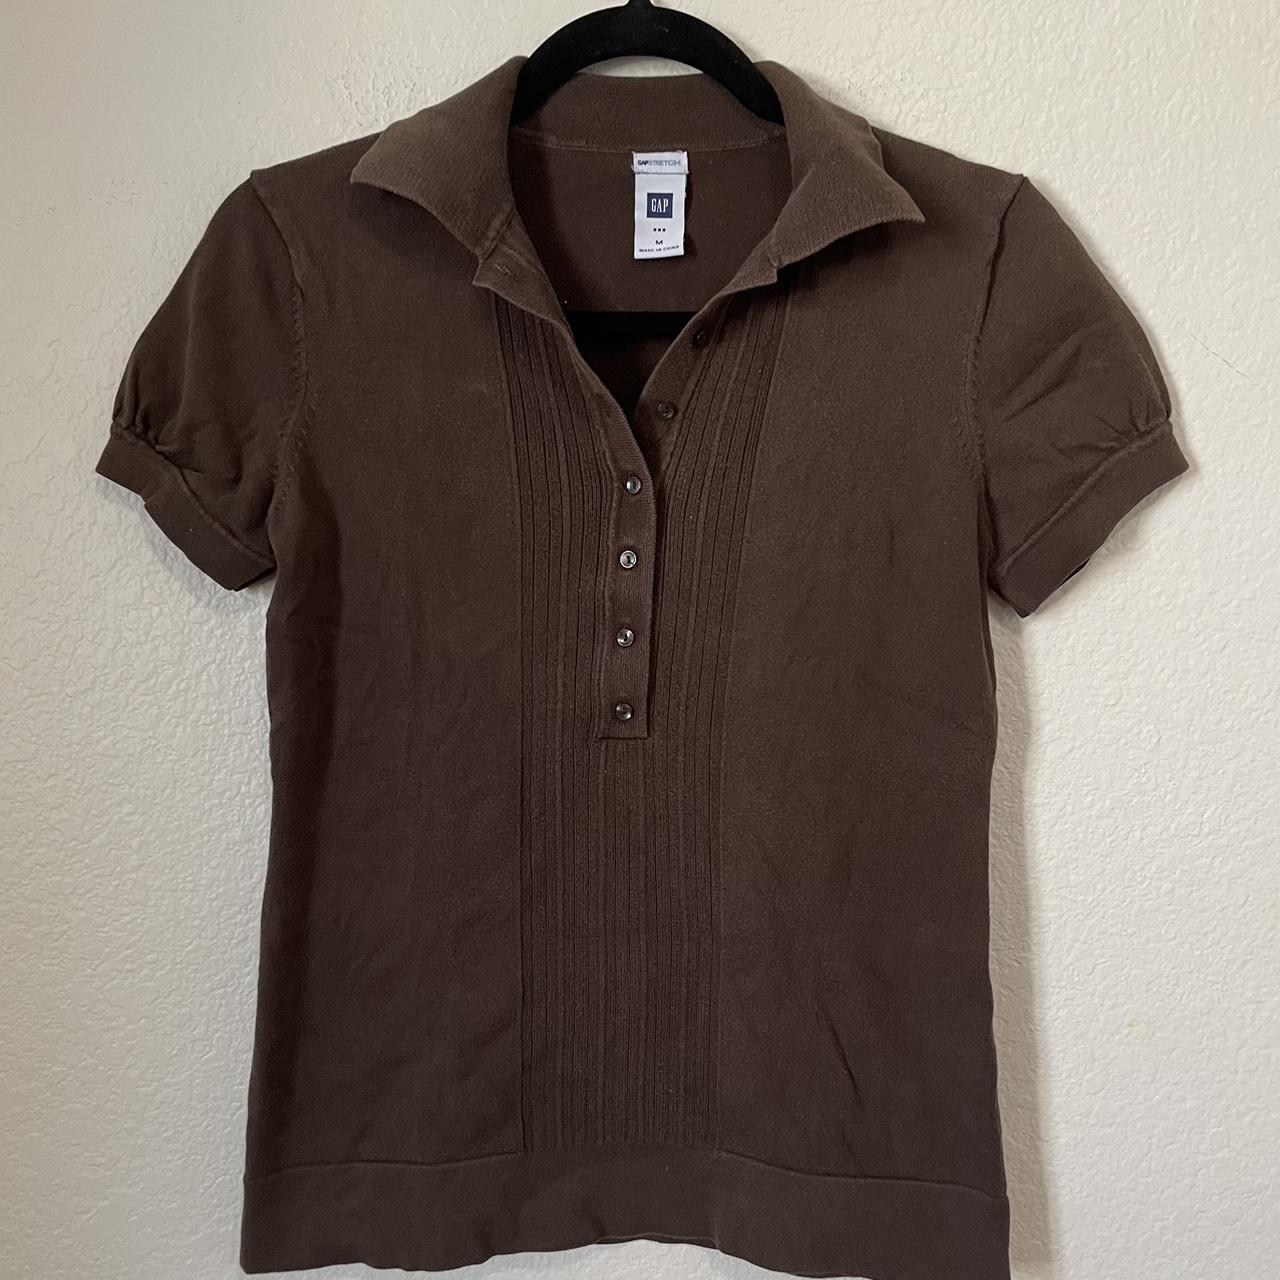 Brown Button Up Shirt - best fits a small or medium... - Depop